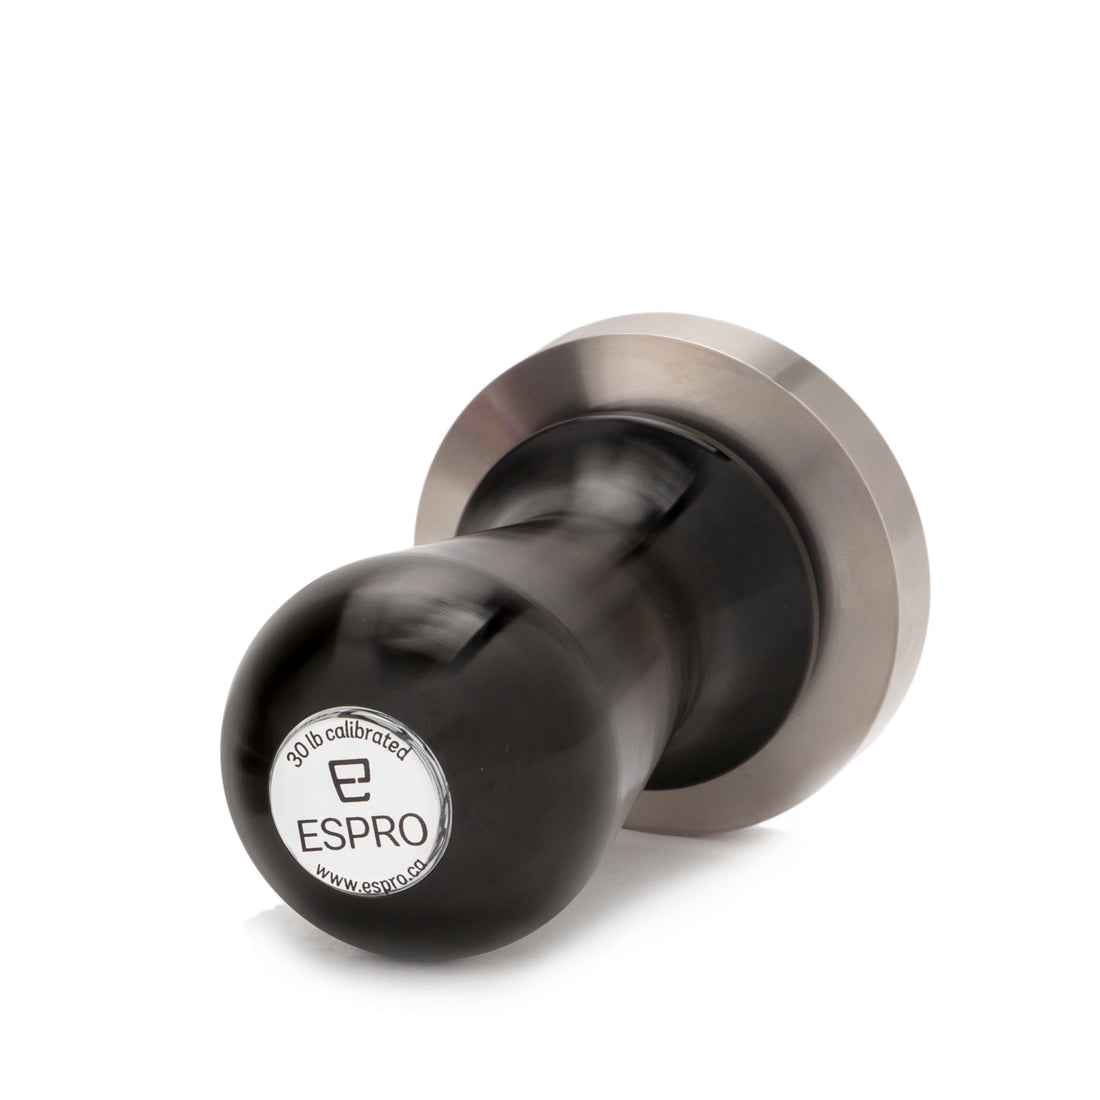 Espro 49mm Calibrated Convex Tamper